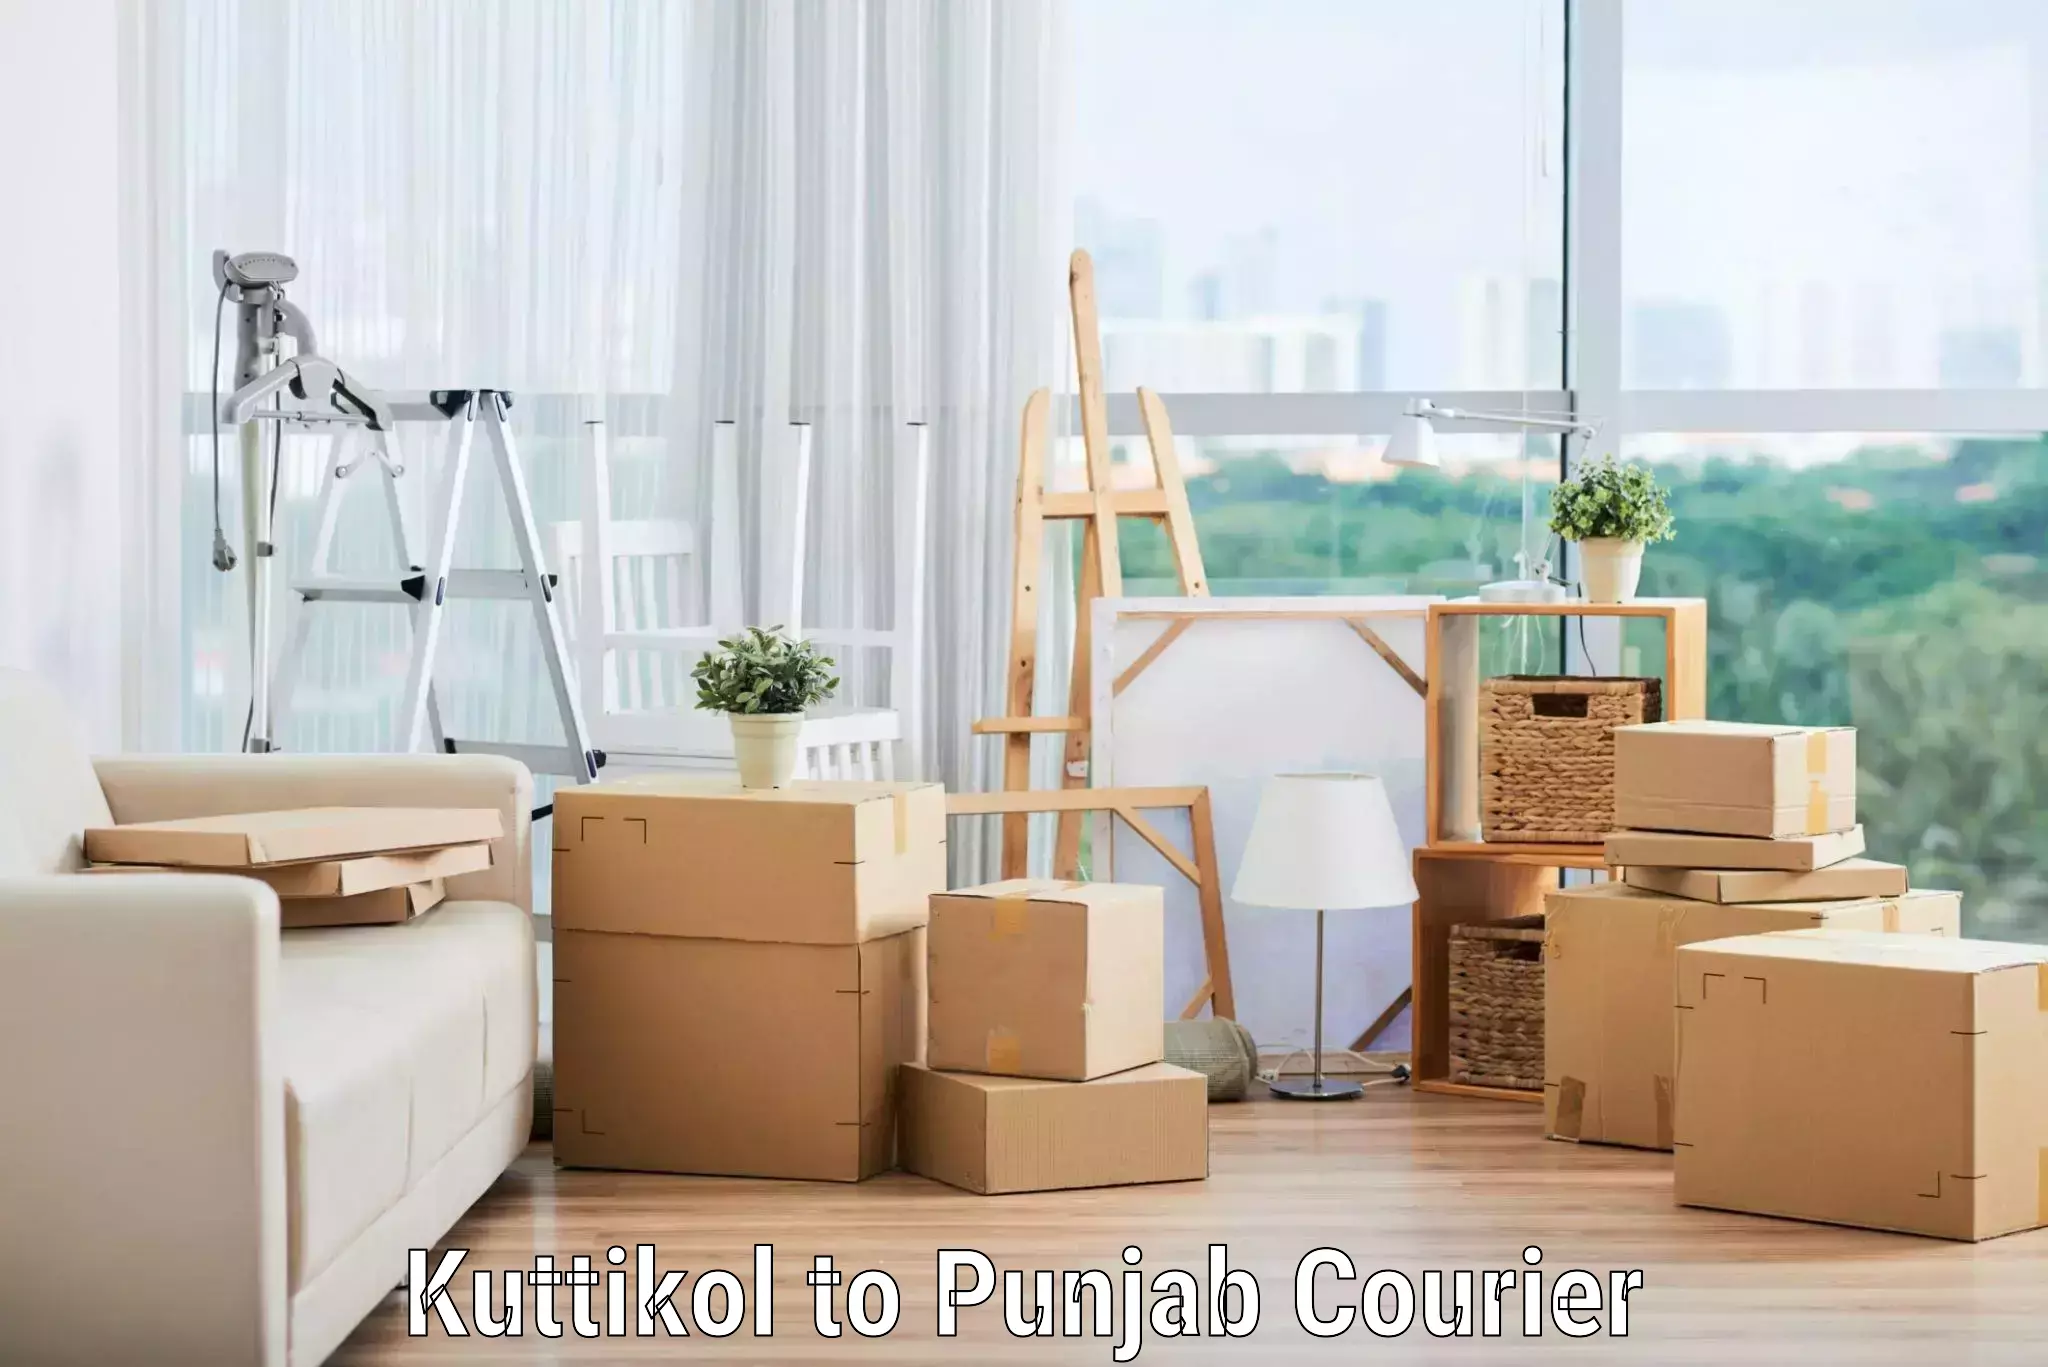 Professional moving assistance Kuttikol to Patti Tarn Tara